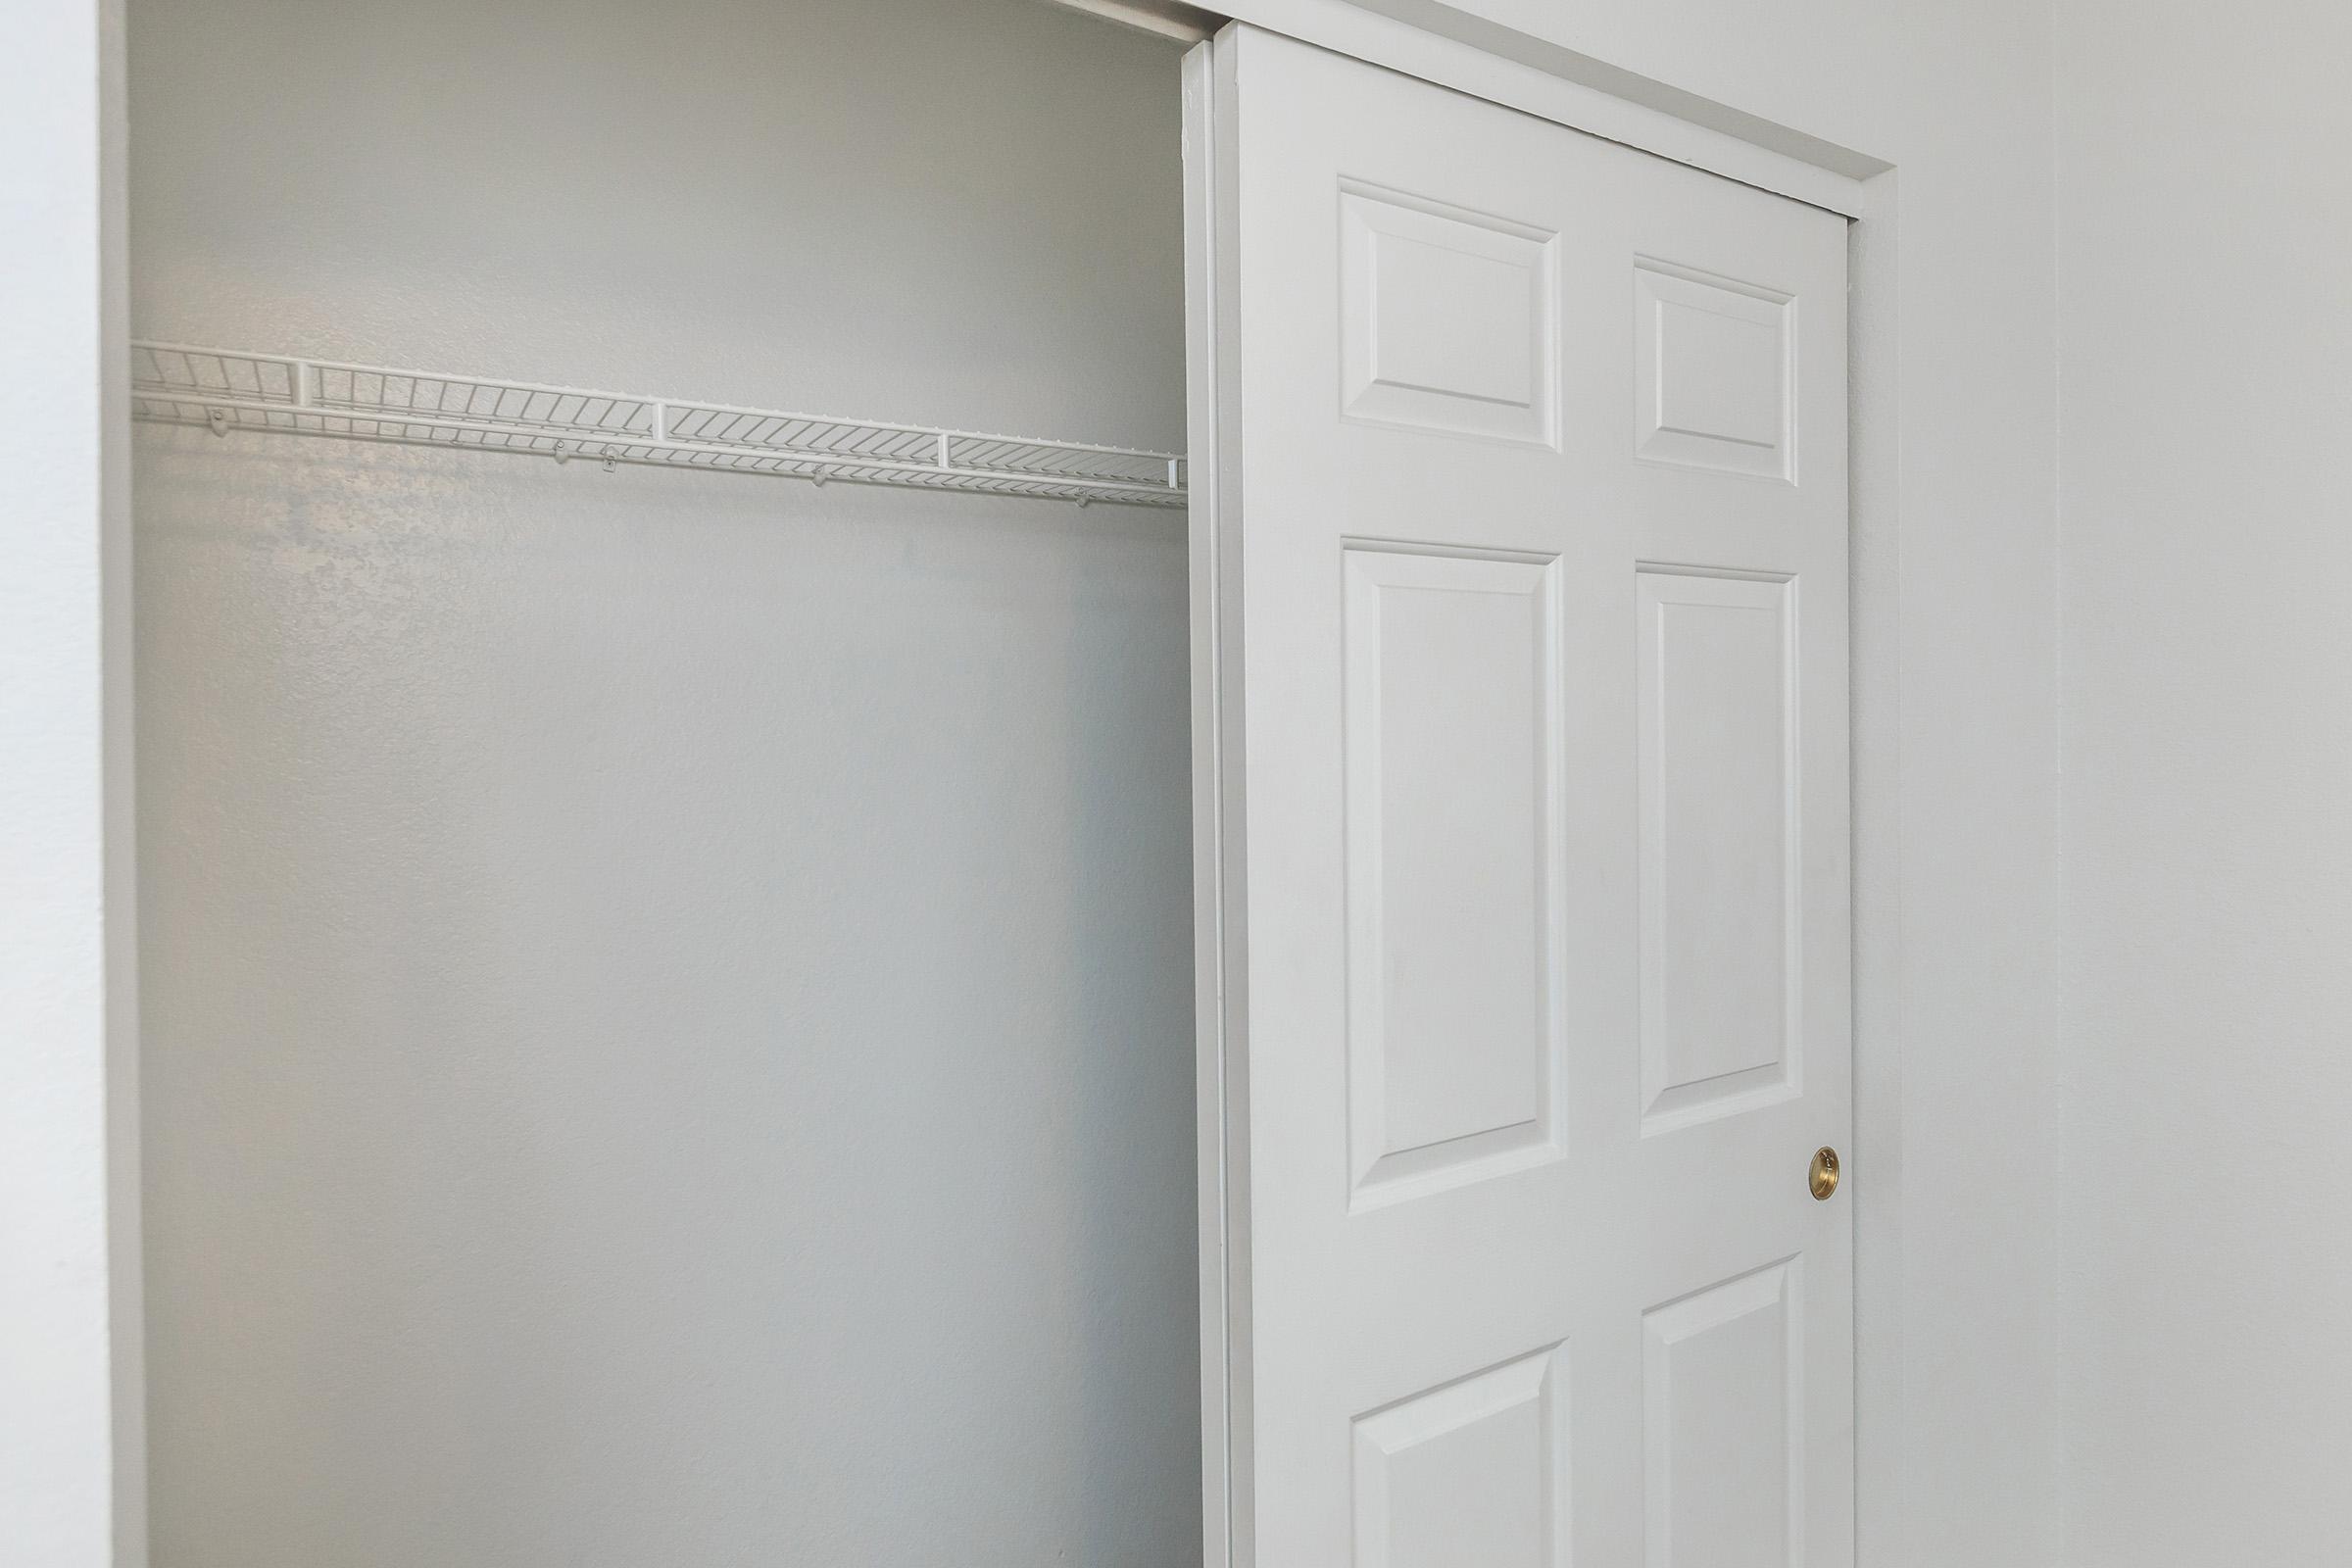 a white door